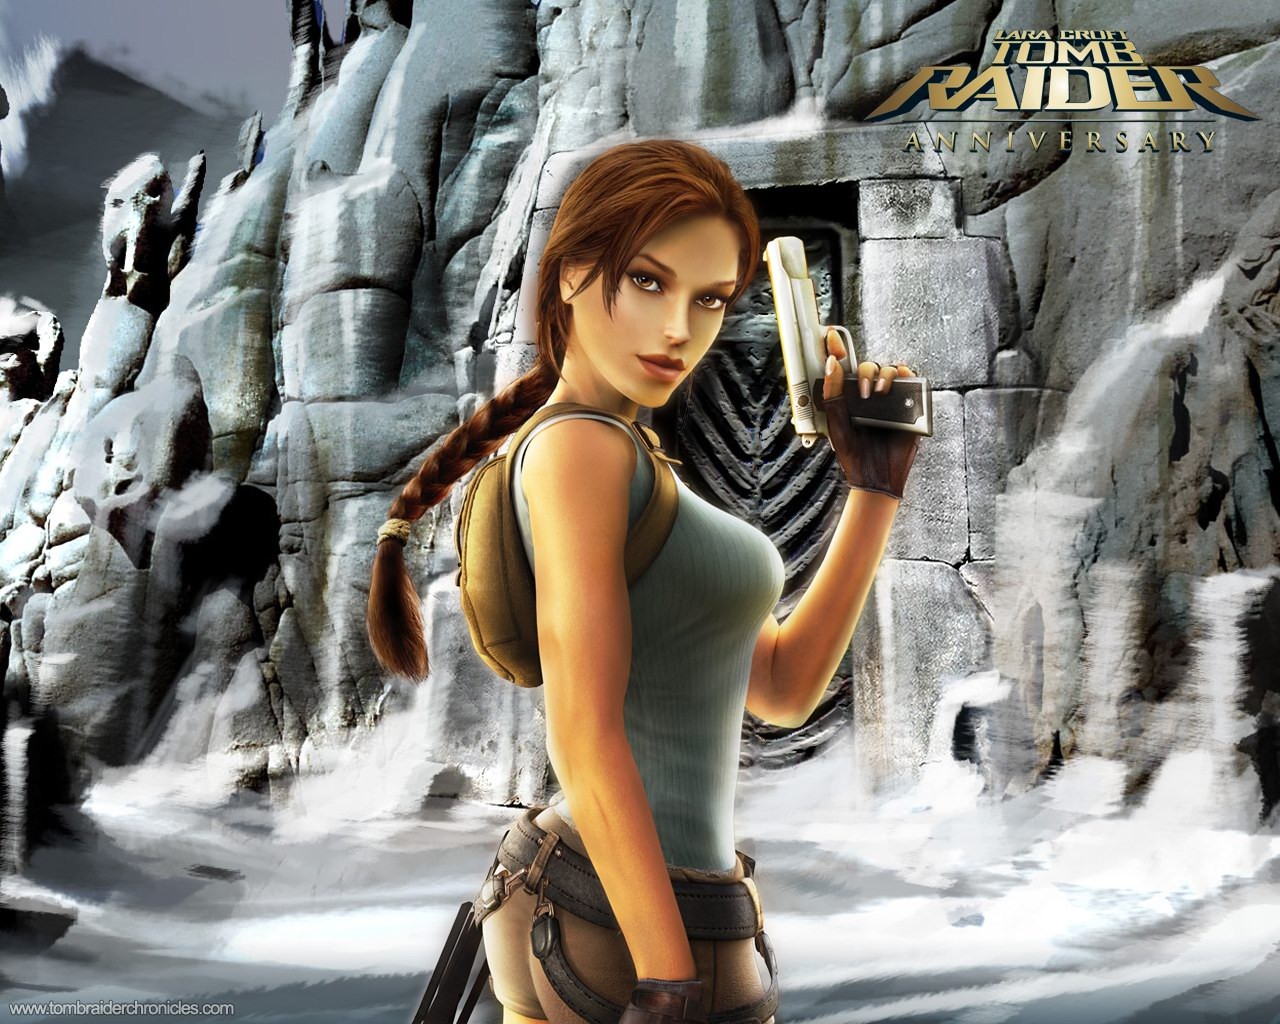 Lara Croft Tomb Raider 10th Anniversary Wallpaper #4 - 1280x1024